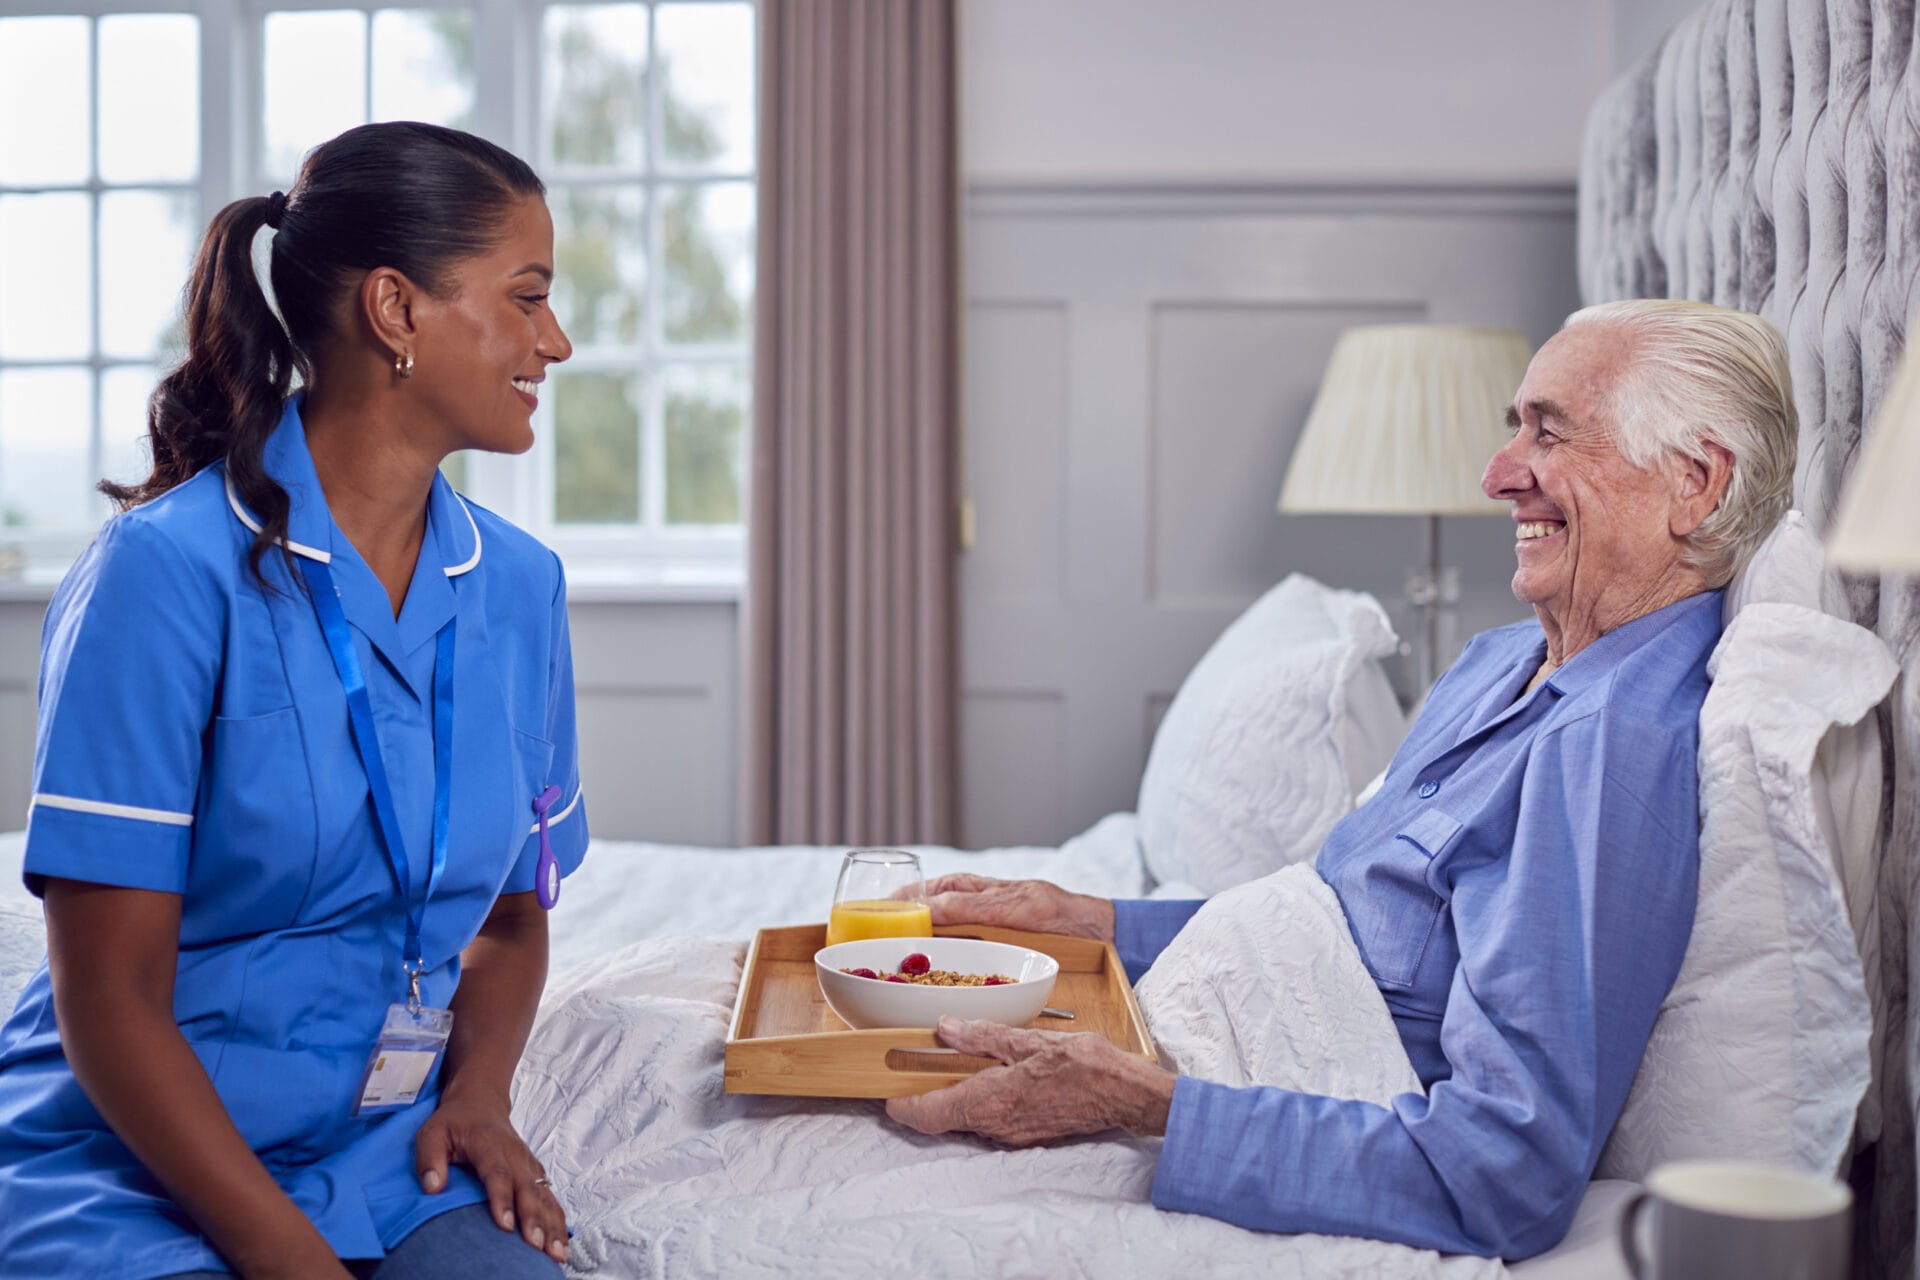 A nurse is talking to an elderly man in bed.